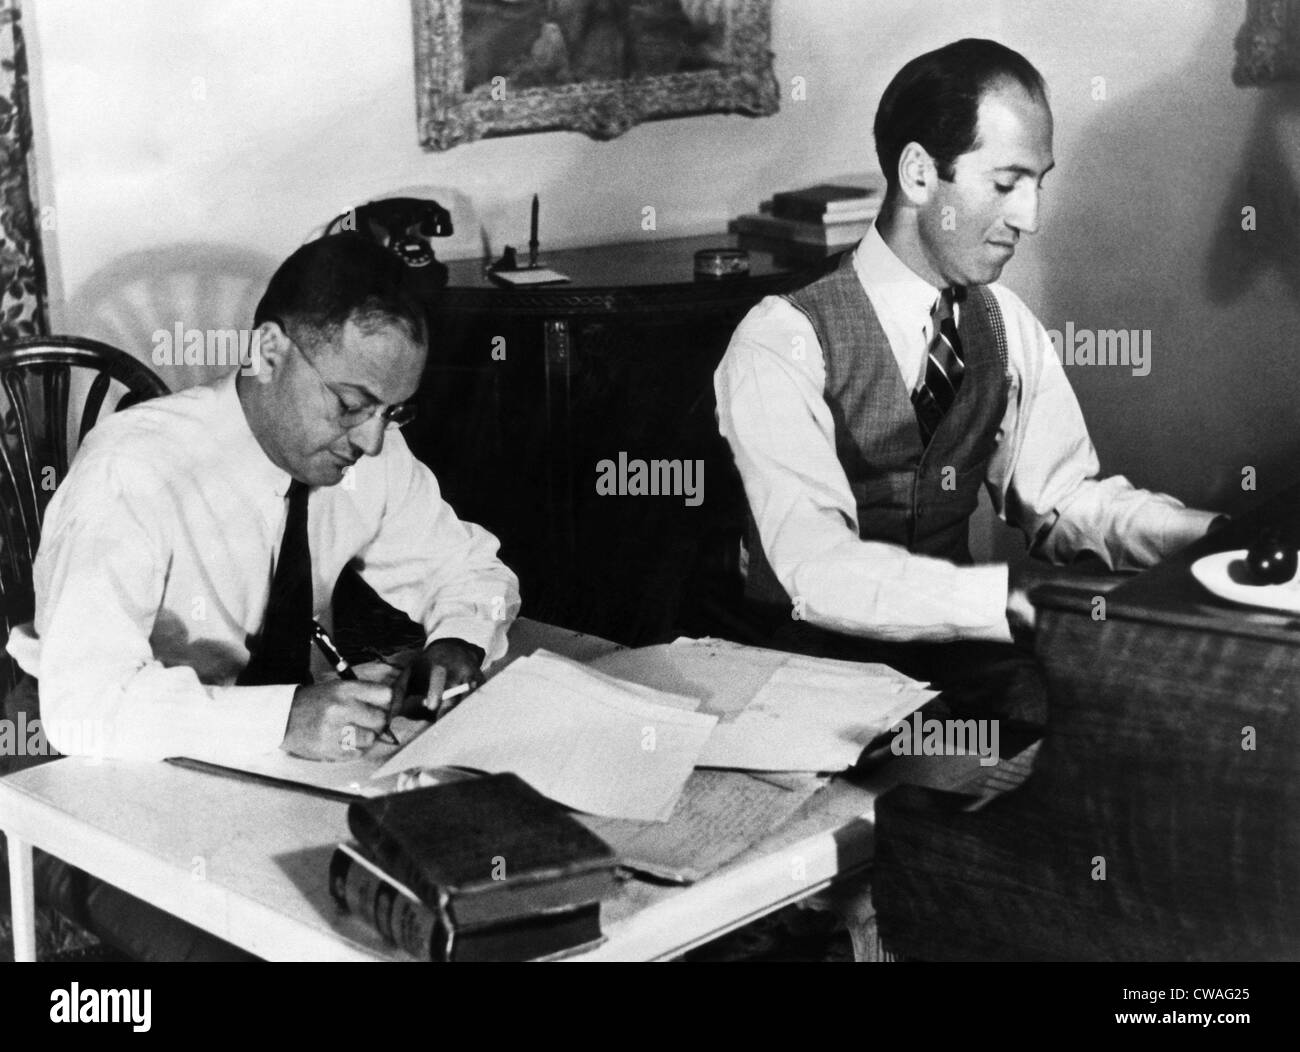 Ira und George Gershwin am Arbeitsplatz auf eine Filmmusik. ca. Anfang der 1930er Jahre. Höflichkeit: CSU Archive/Everett Collection. Stockfoto